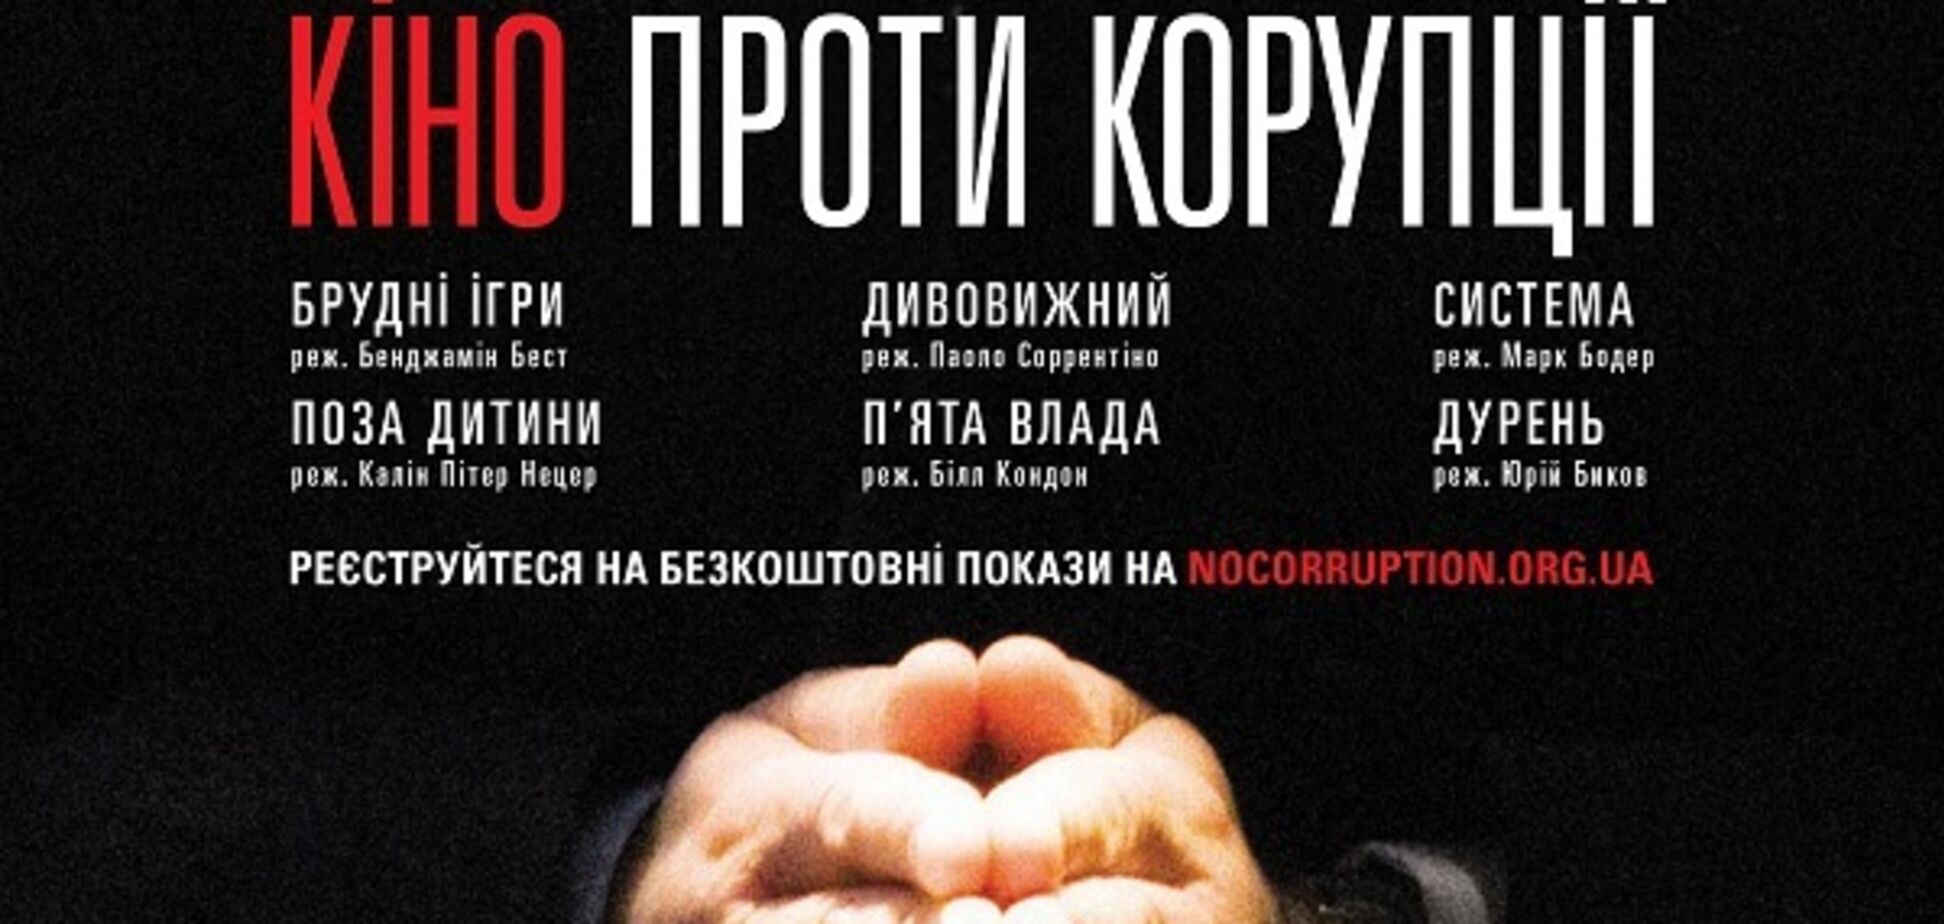 В Украине впервые состоится фестиваль 'Кино против коррупции'